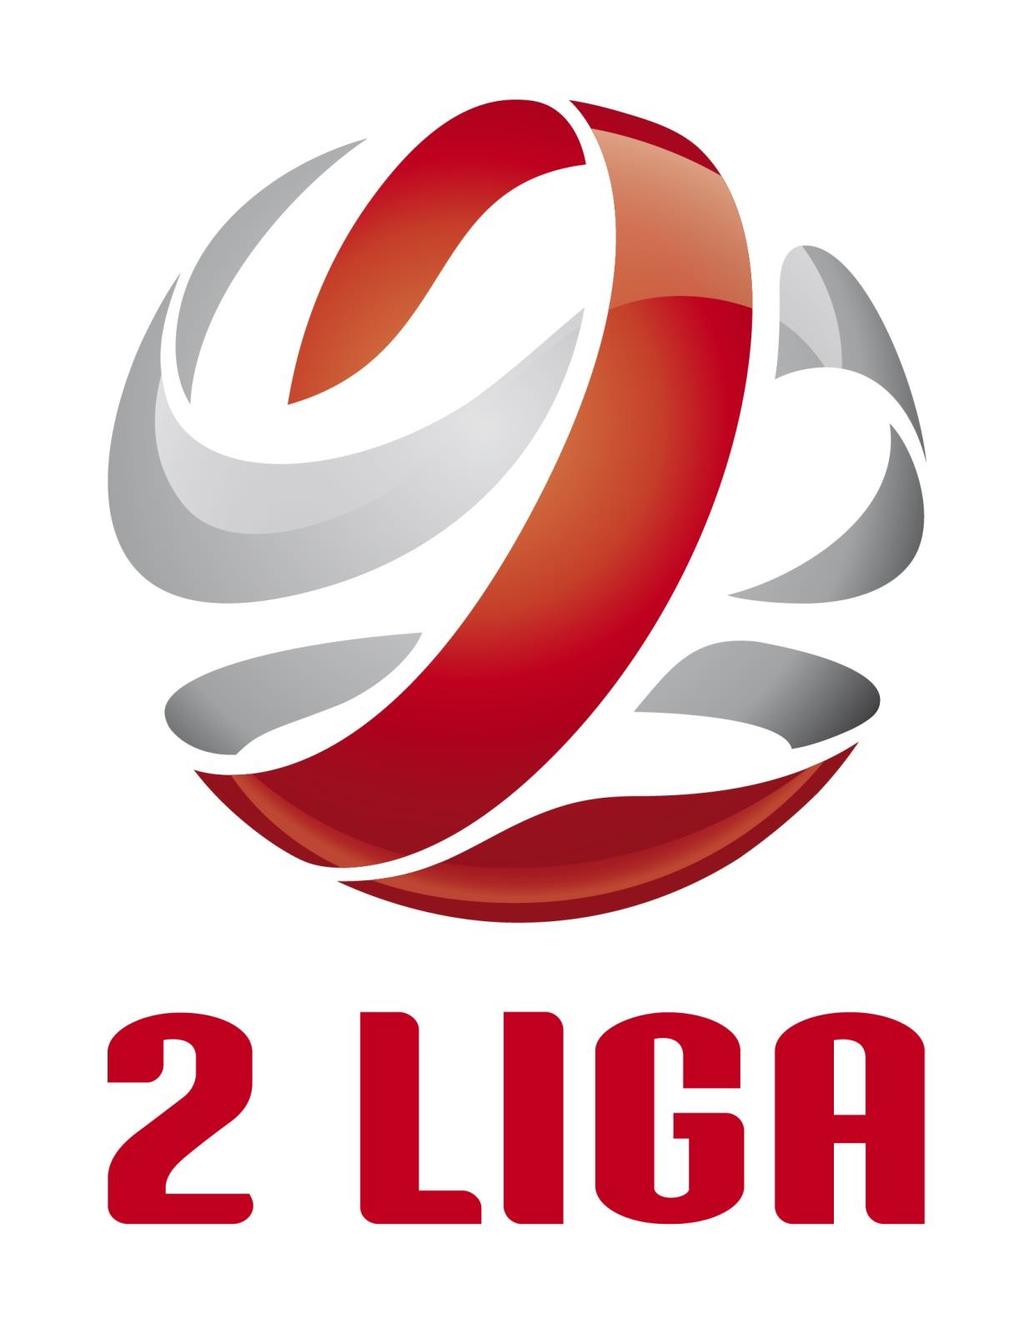 Załącznik nr 2 do Uchwały nr IV/69 z dnia 19 kwietnia 2018 roku Zarządu Polskiego Związku Piłki